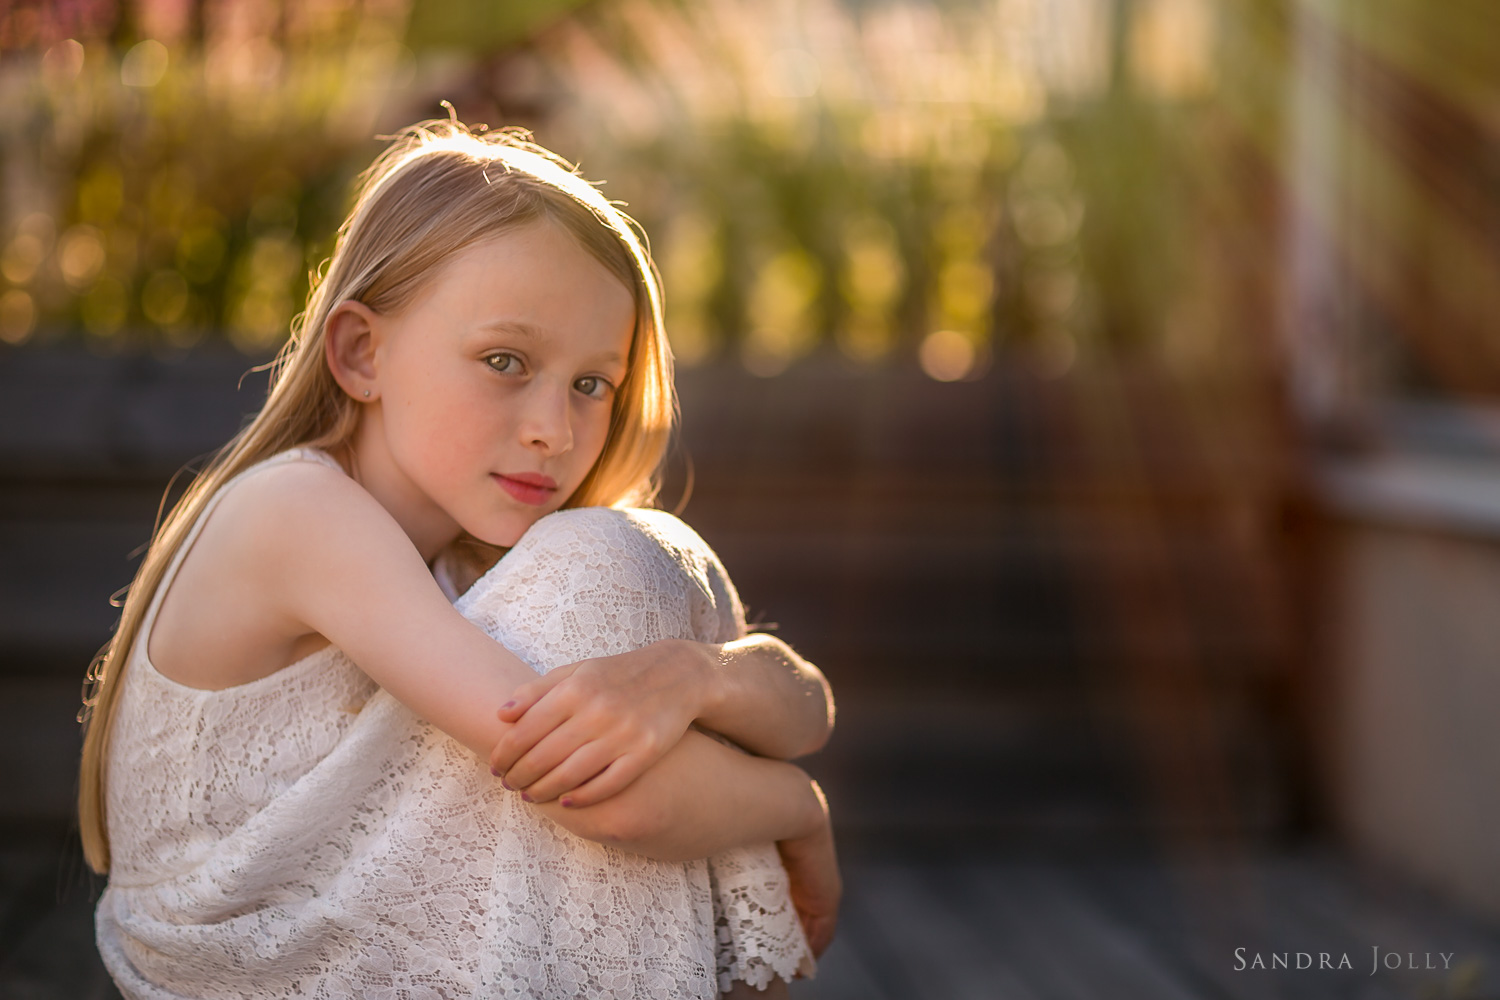 summer-portrait-of-girl-white-dress-by-barnfotograf-Sandra-Jolly.jpg